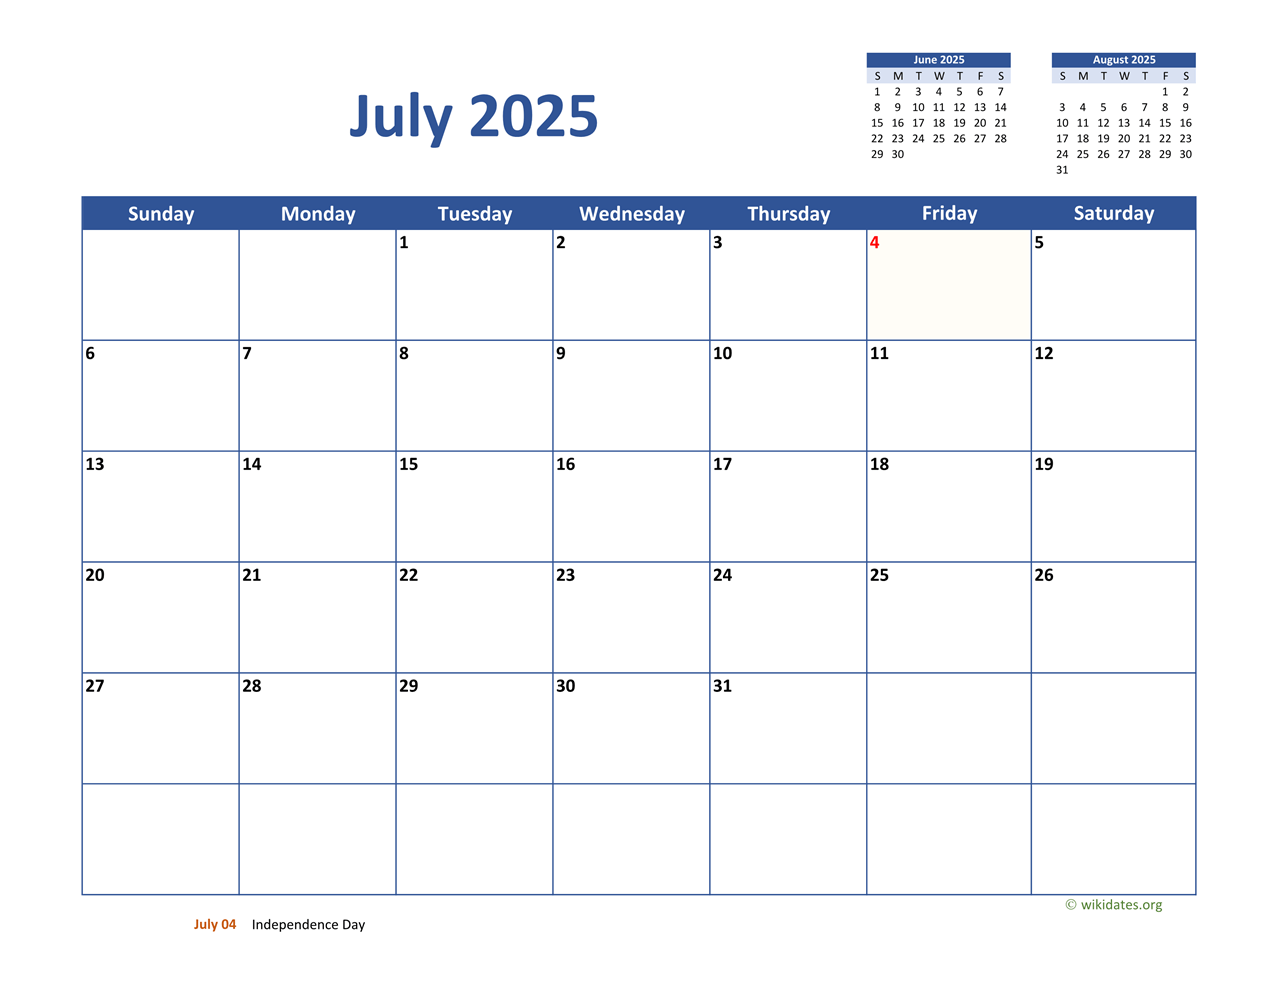 July 2025 Calendar Classic WikiDates